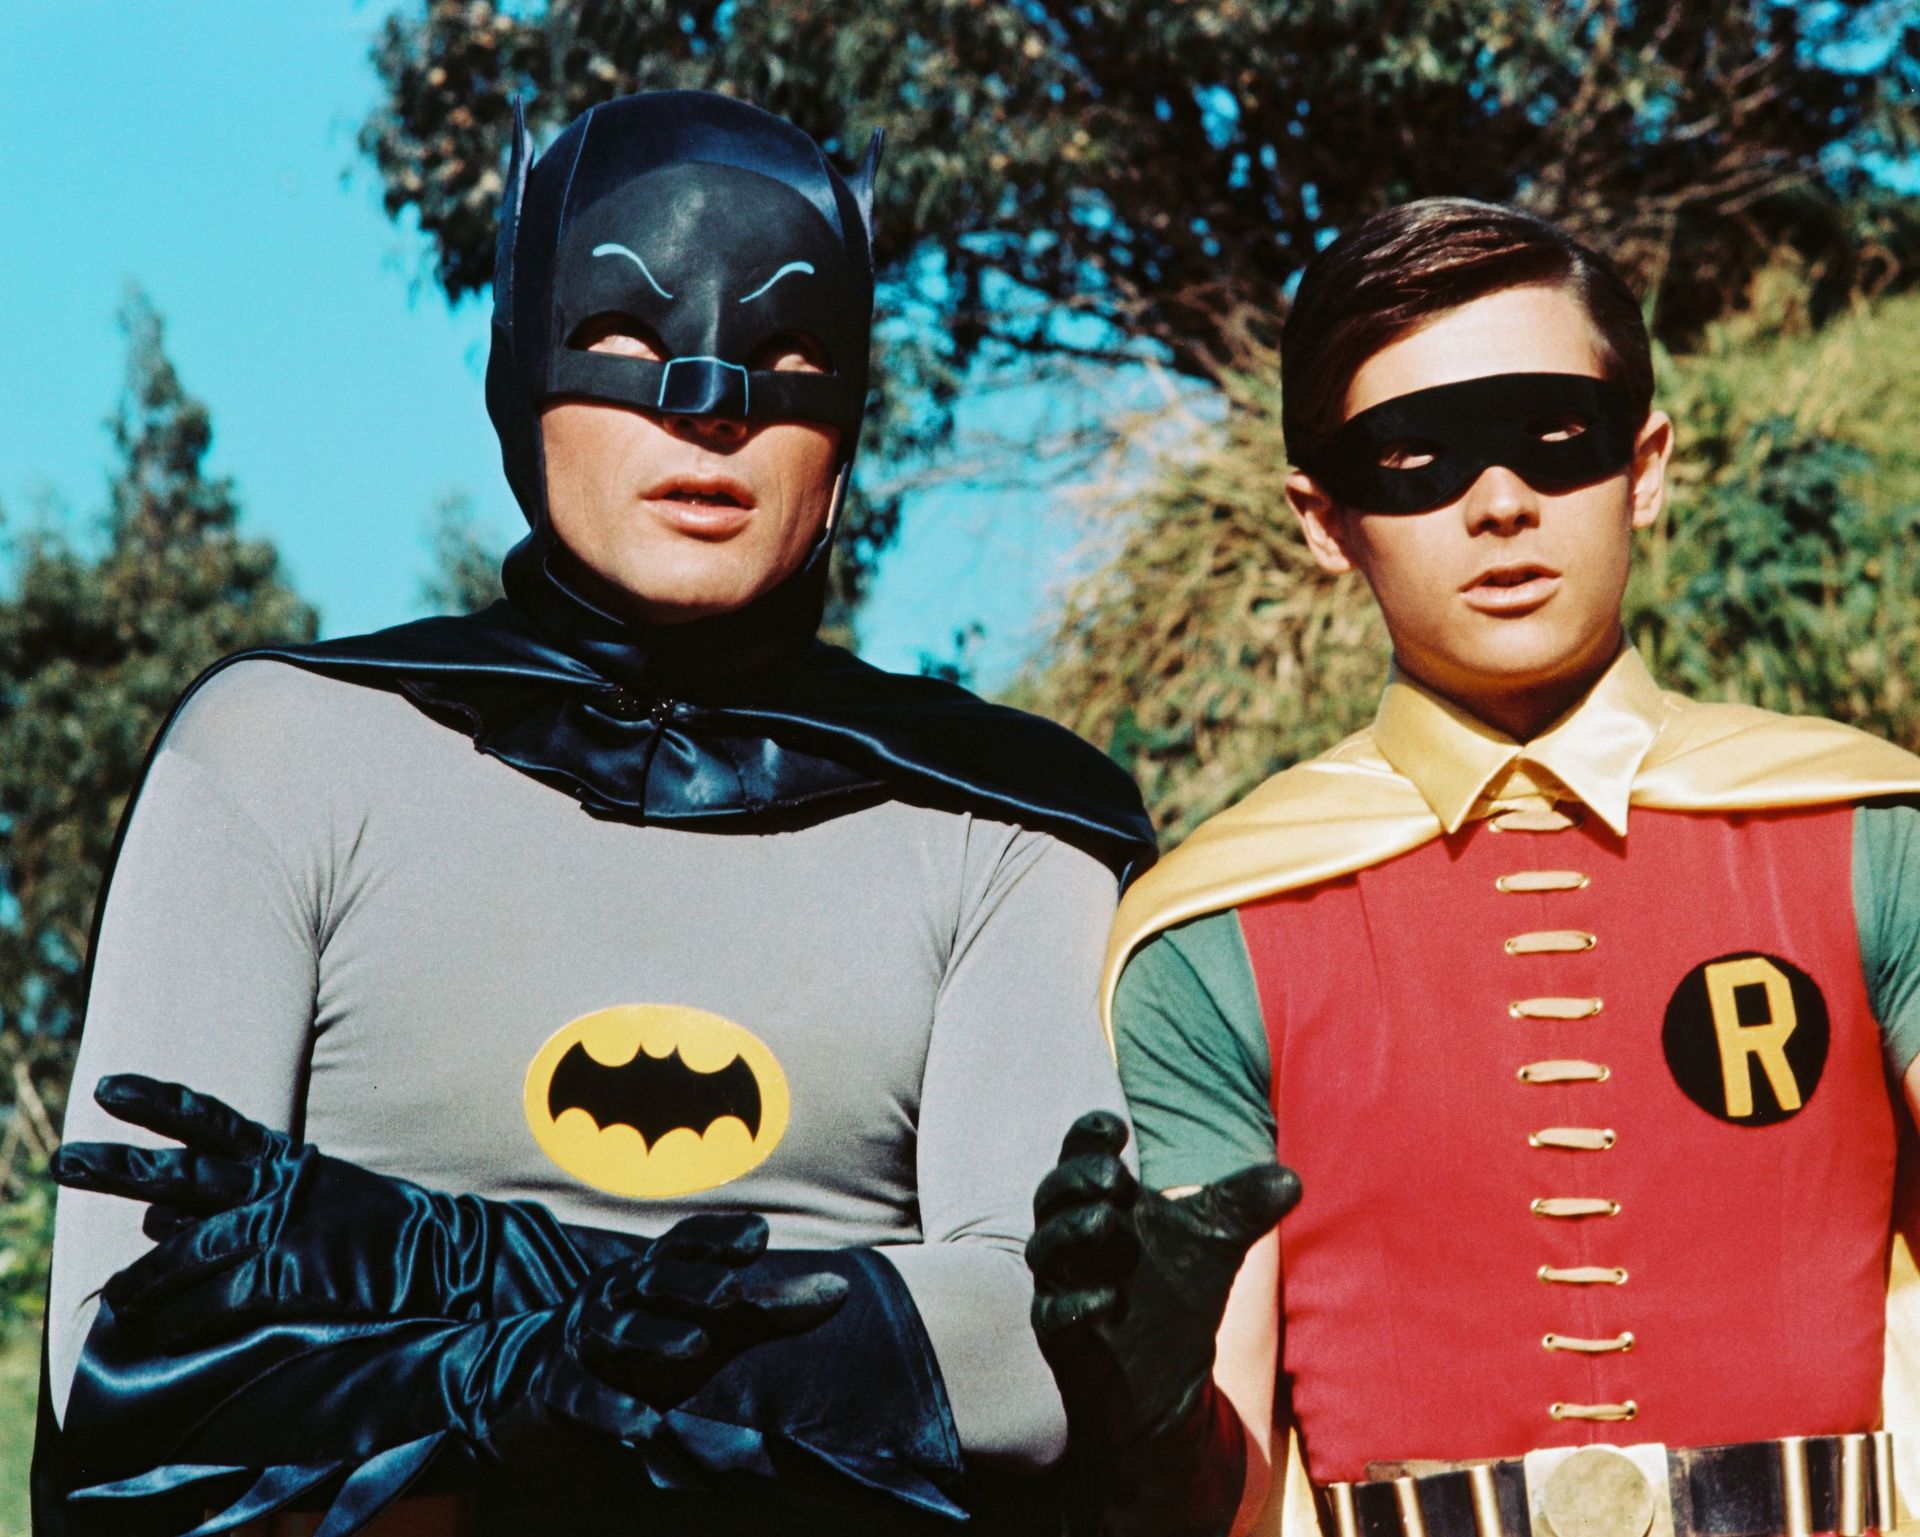 Les acteurs américains Adam West dans Bruce Wayne/Batman et Burt Ward dans Dick Grayson/Robin dans la série télévisée "Batman", vers 1966.